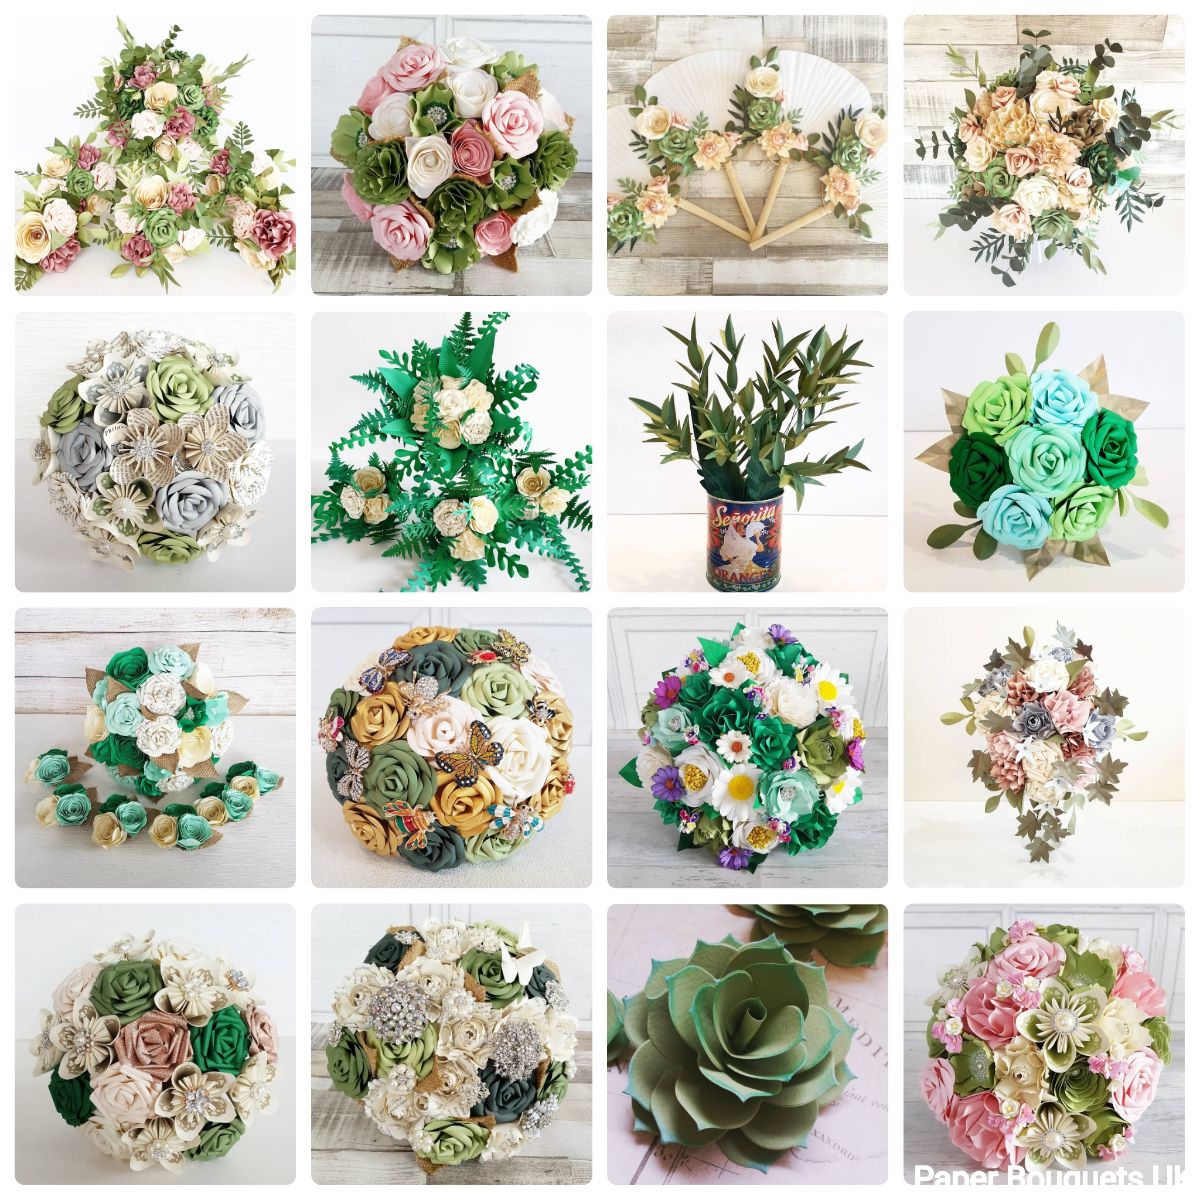 Paper Bouquets UK-Image-100